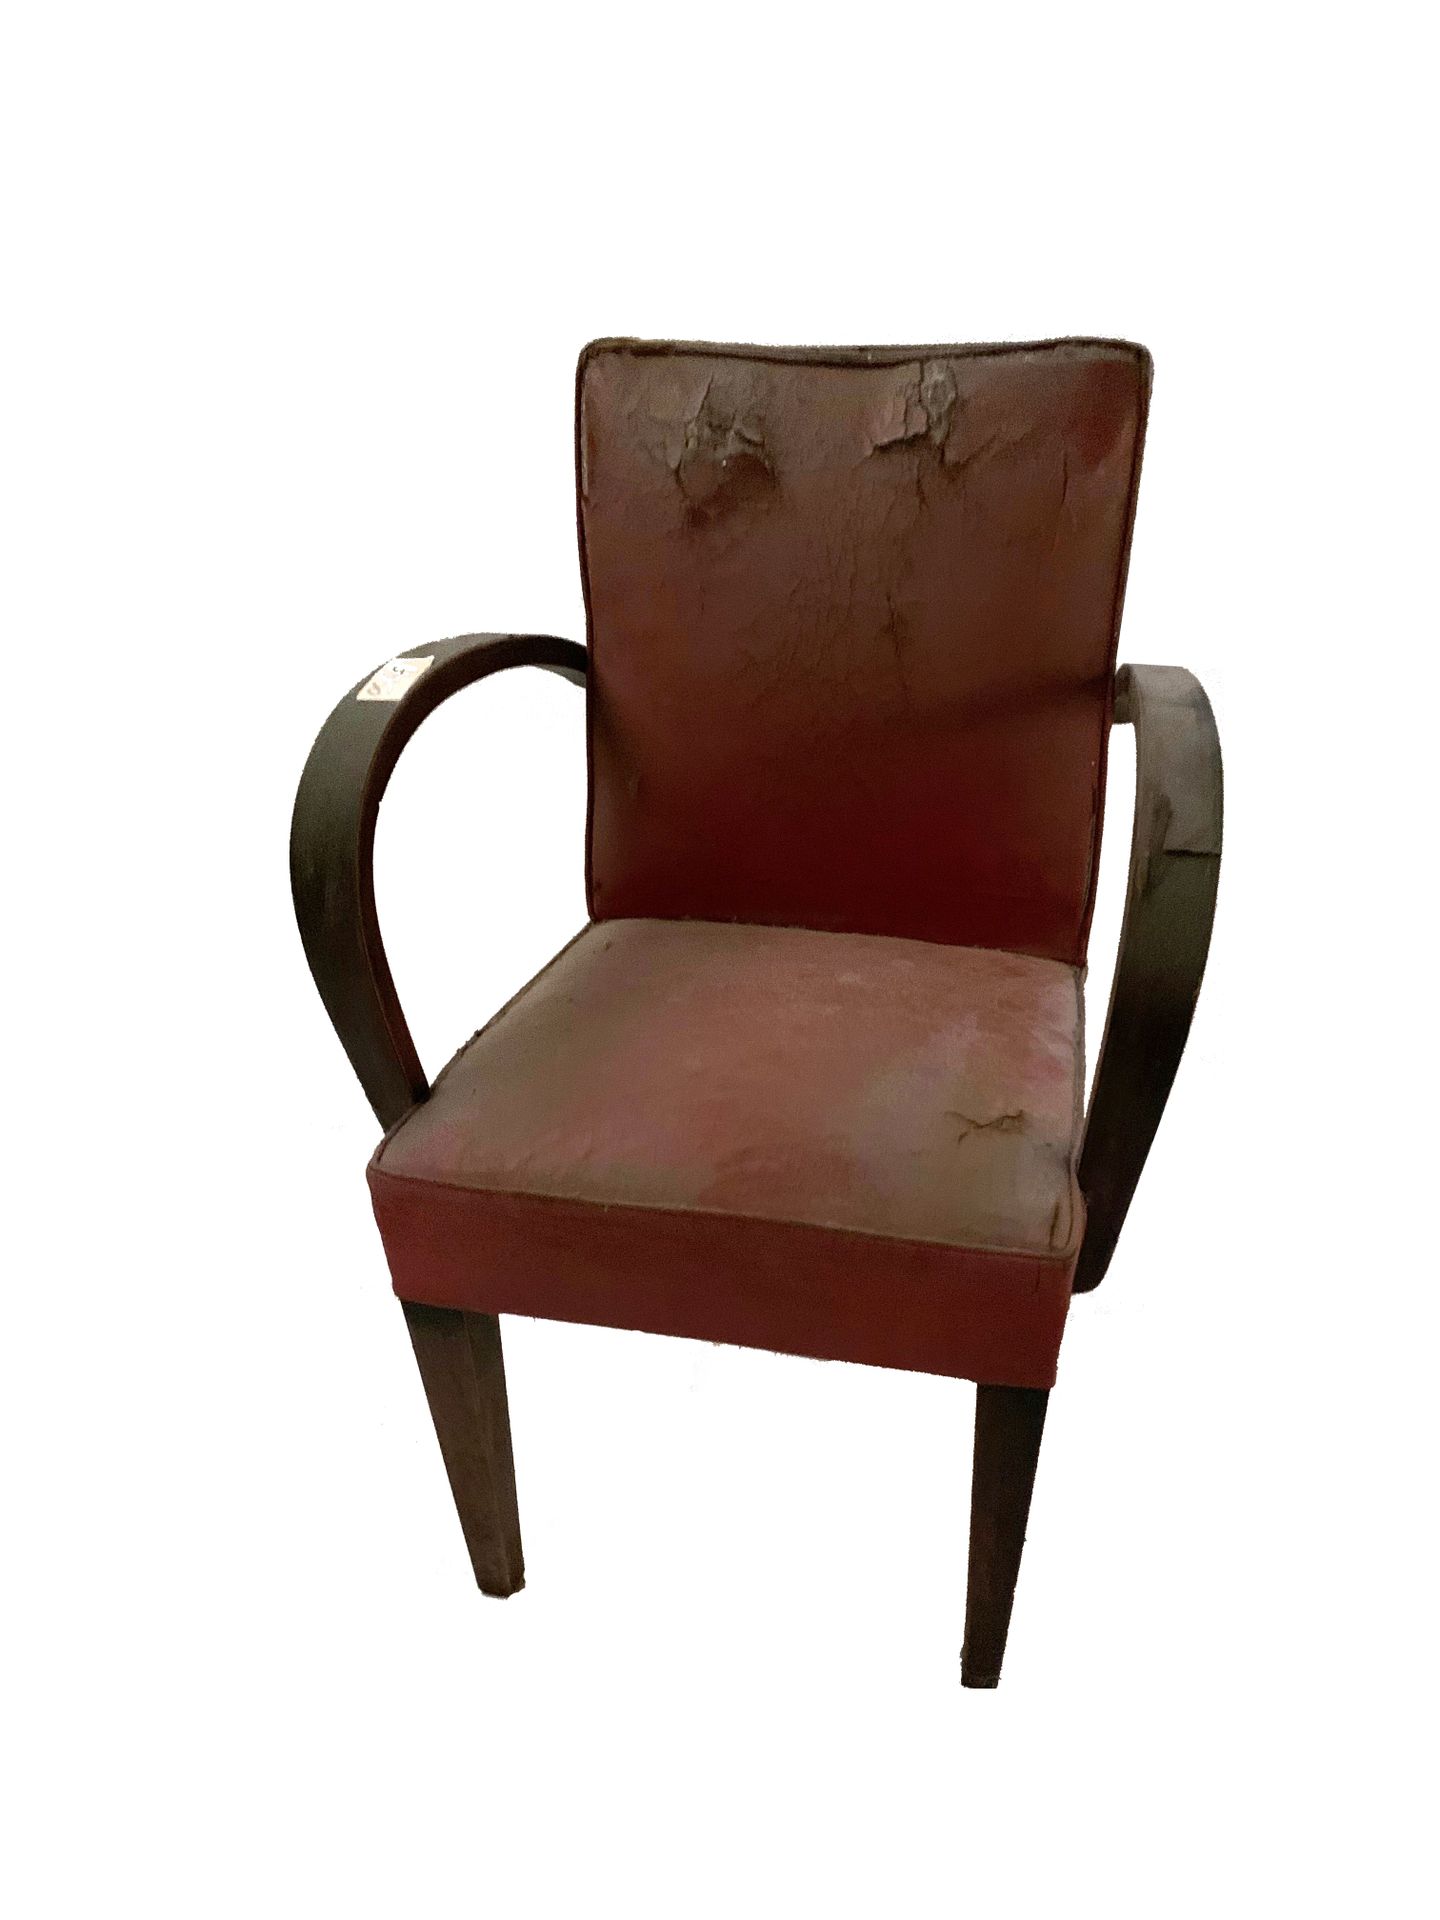 Fauteuils 
Serie von vier Sesseln. Rotes Skaï. Armlehnen aus Holz. Wiederherstel&hellip;